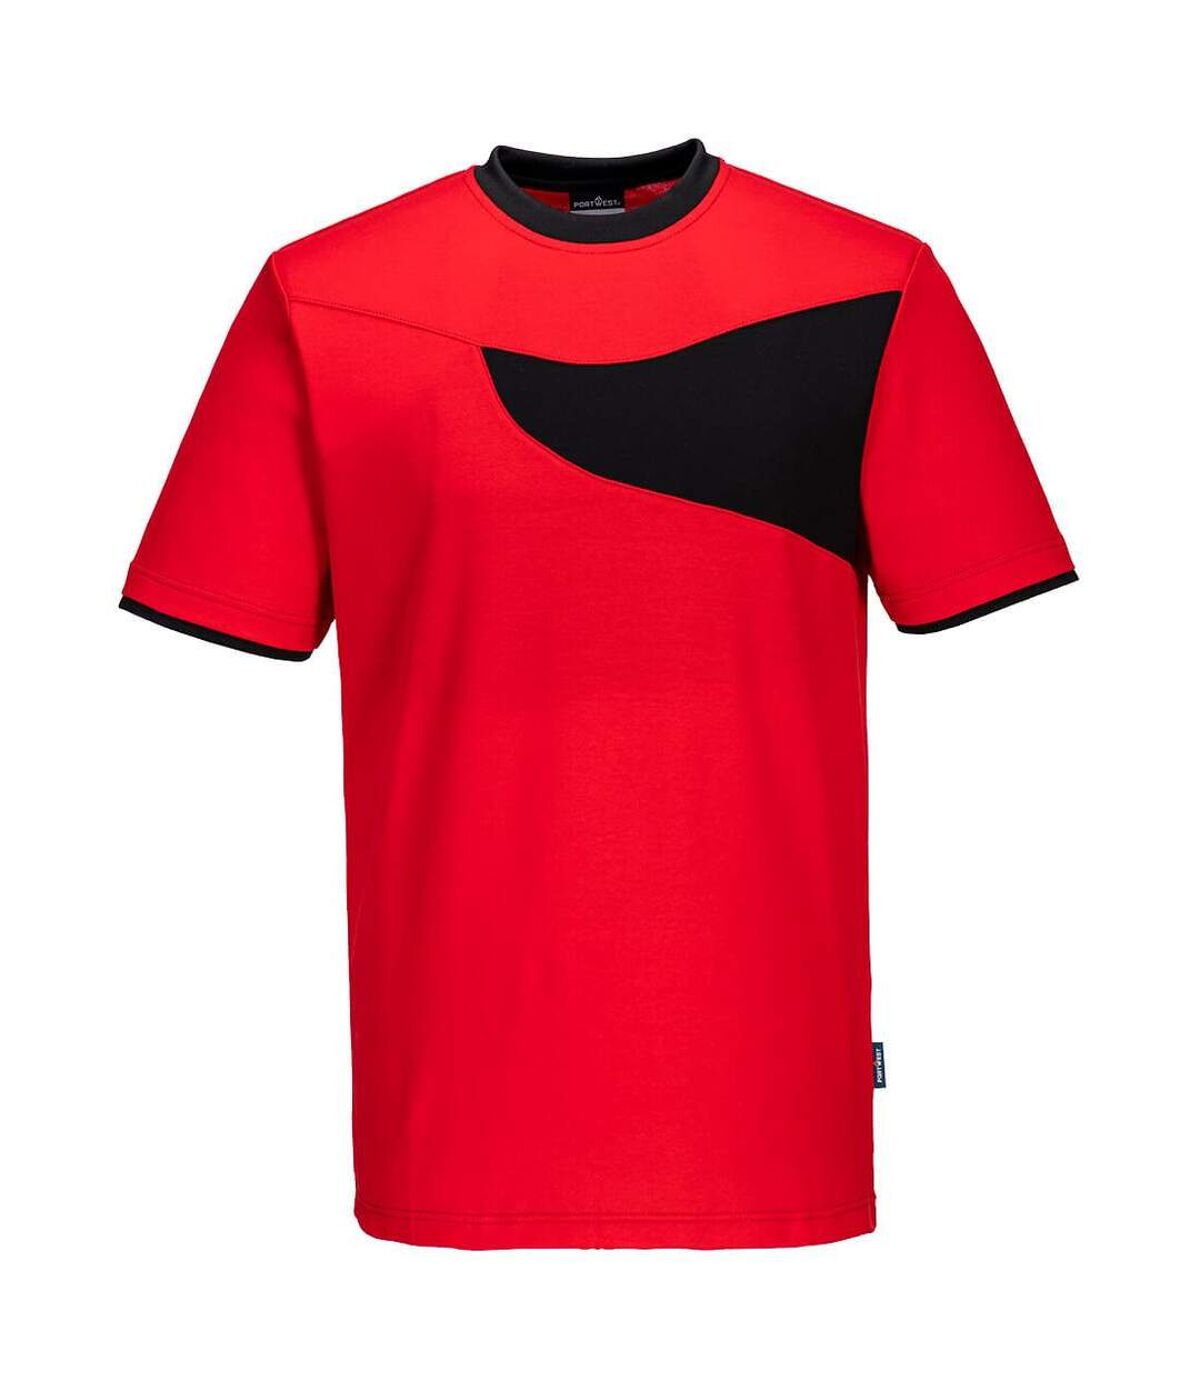 Portwest Mens Cotton Active T-Shirt (Red/Black)